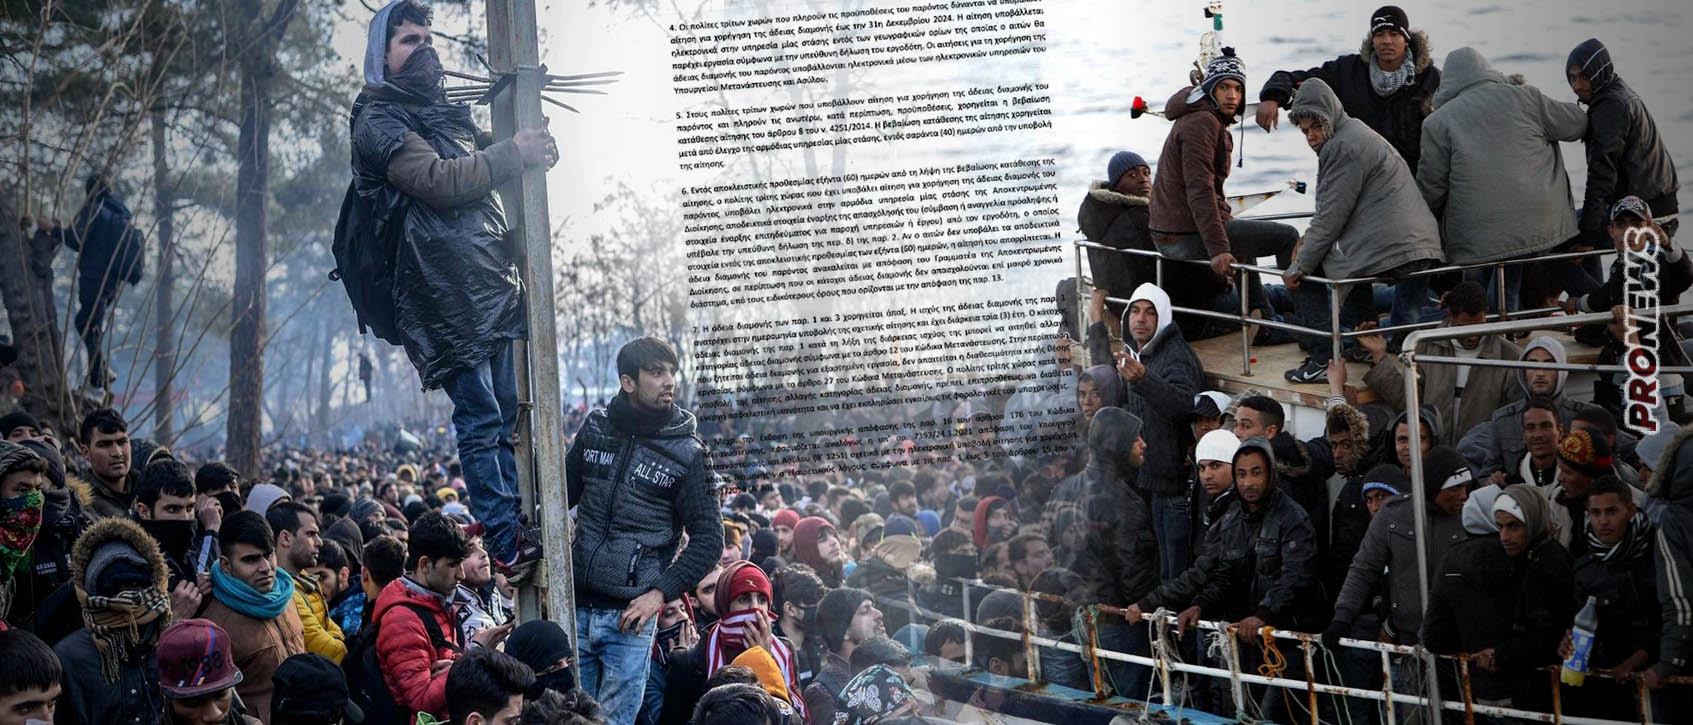 Τροπολογία-κάλεσμα σε χιλιάδες μουσουλμάνους αλλοδαπούς να κατακλύσουν την Ελλάδα